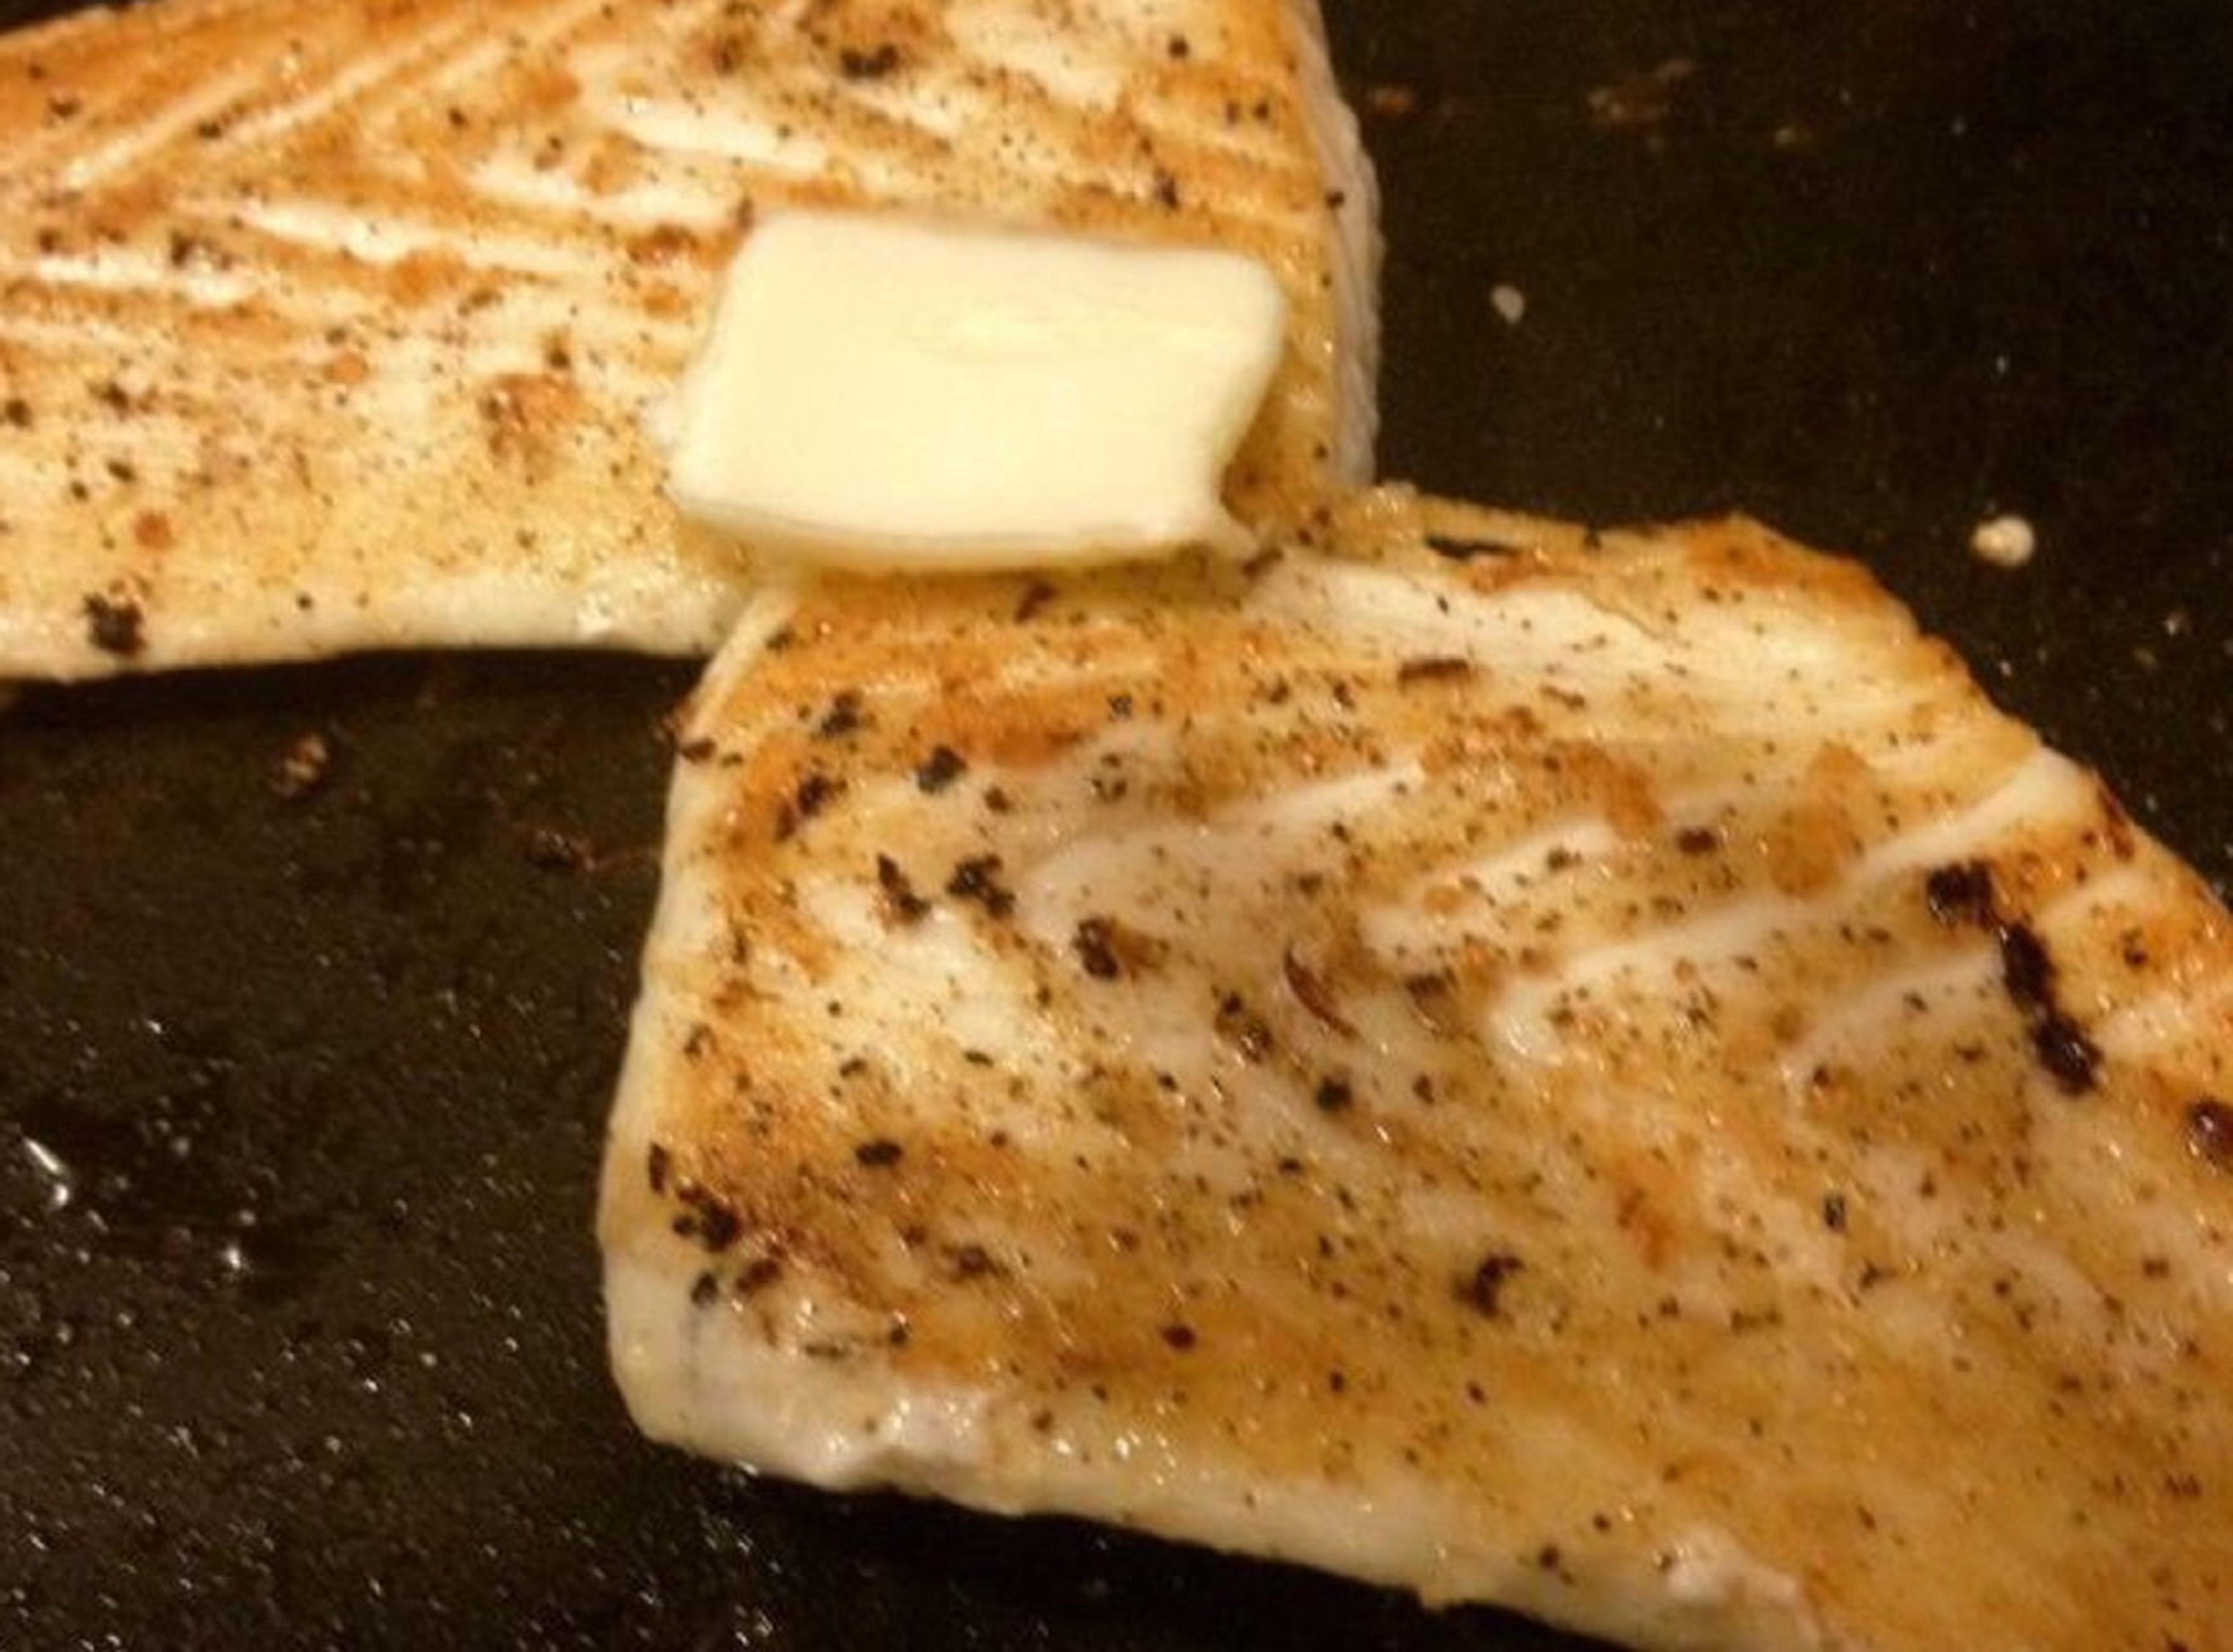 Beide Seiten des Heilbutts mit Salz und frisch gemahlenem Pfeffer würzen. Dann im Speckfett braten. Dabei zunächst die erste Seite etwa 4 – 5 Min. braten, dann umdrehen. Butter auf den Fisch geben und etwa 3 – 4 Min. auf der zweiten Seite braten.